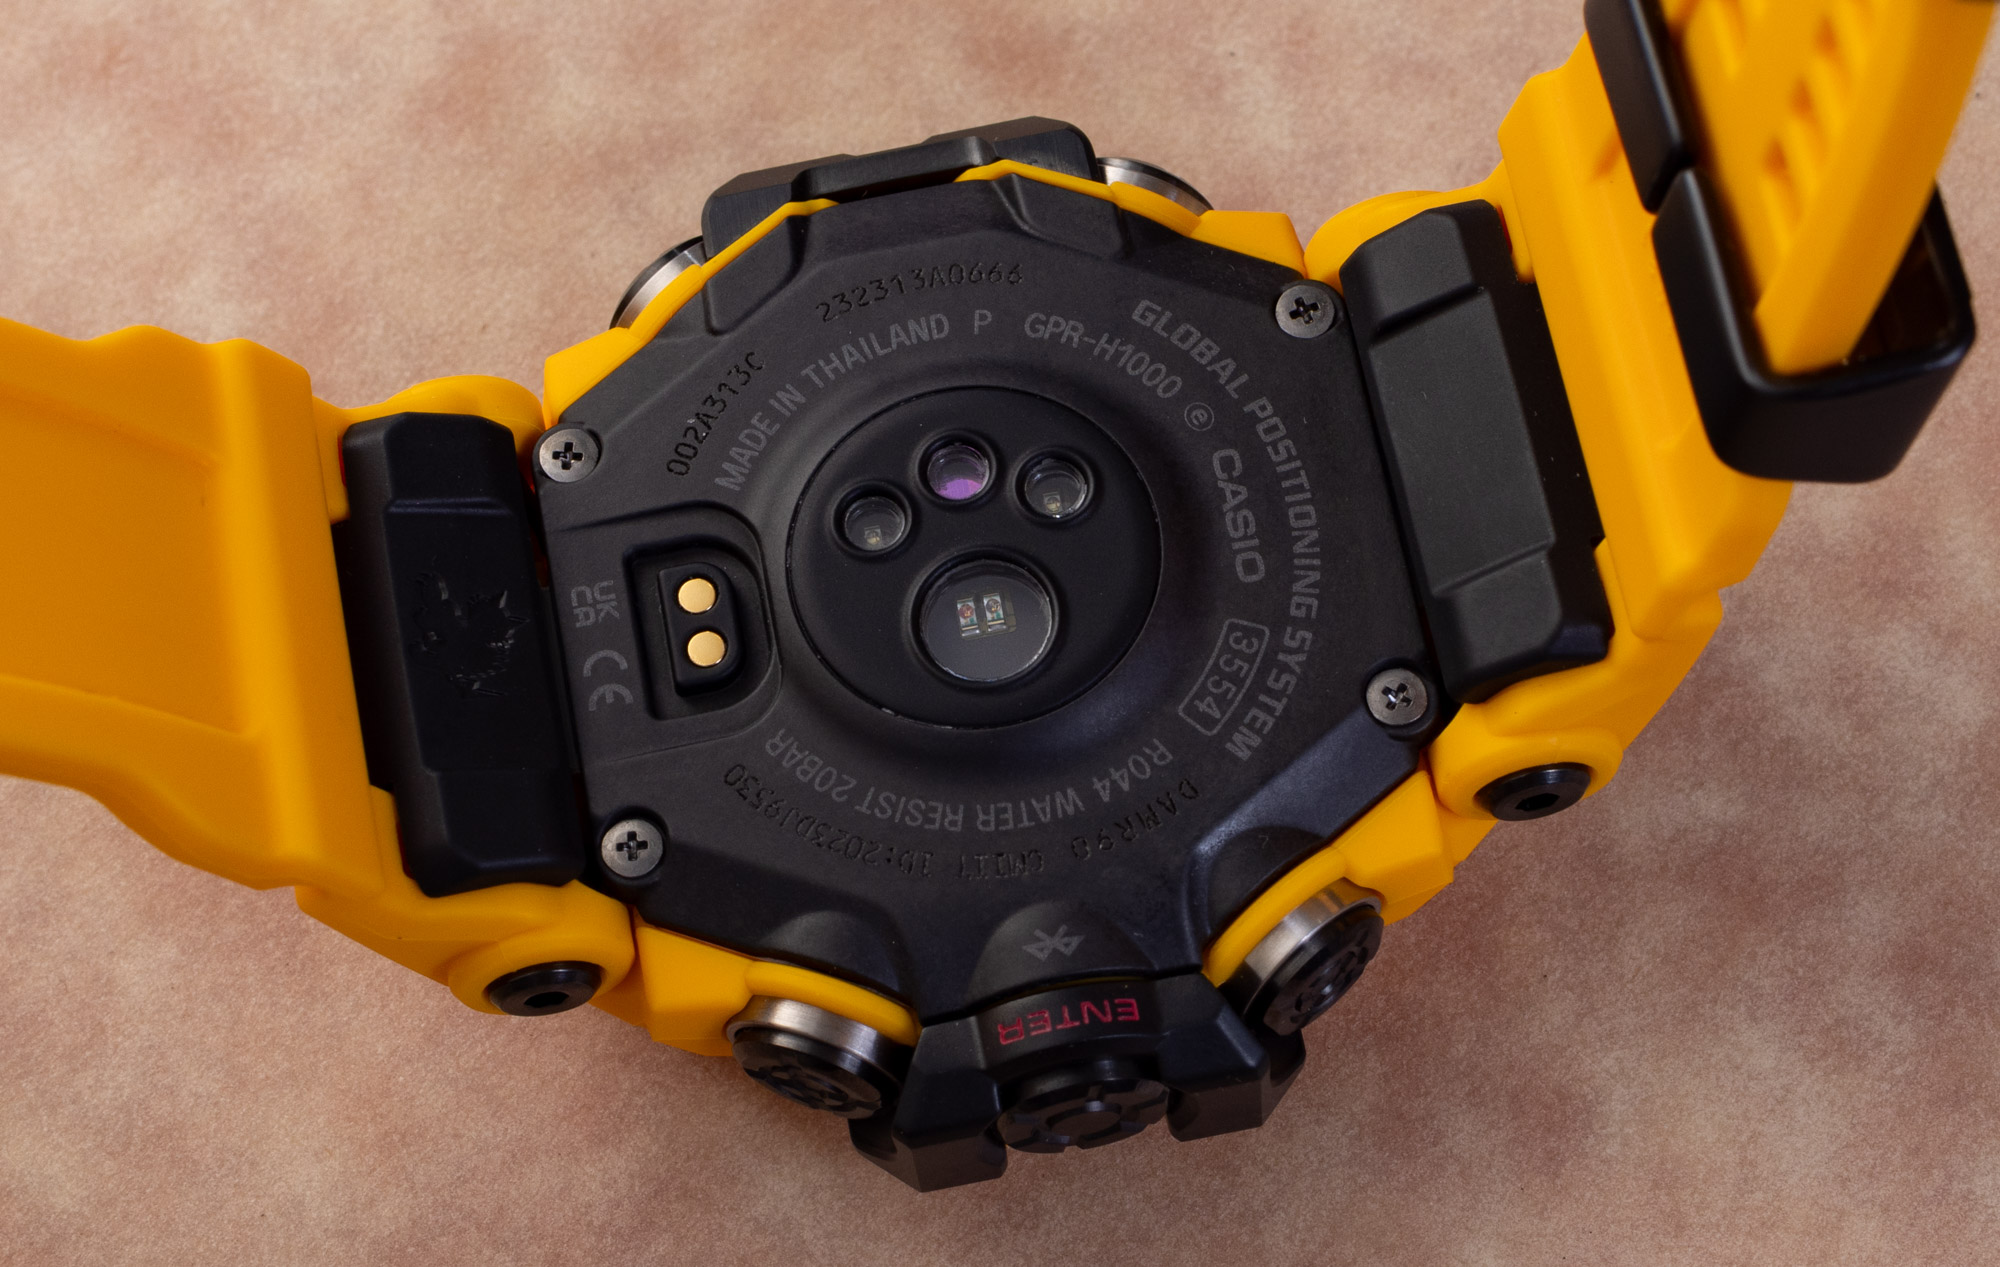 Обзор часов: Casio G-Shock Rangeman GPR-H1000 - это "мадмастер" среди часов Move